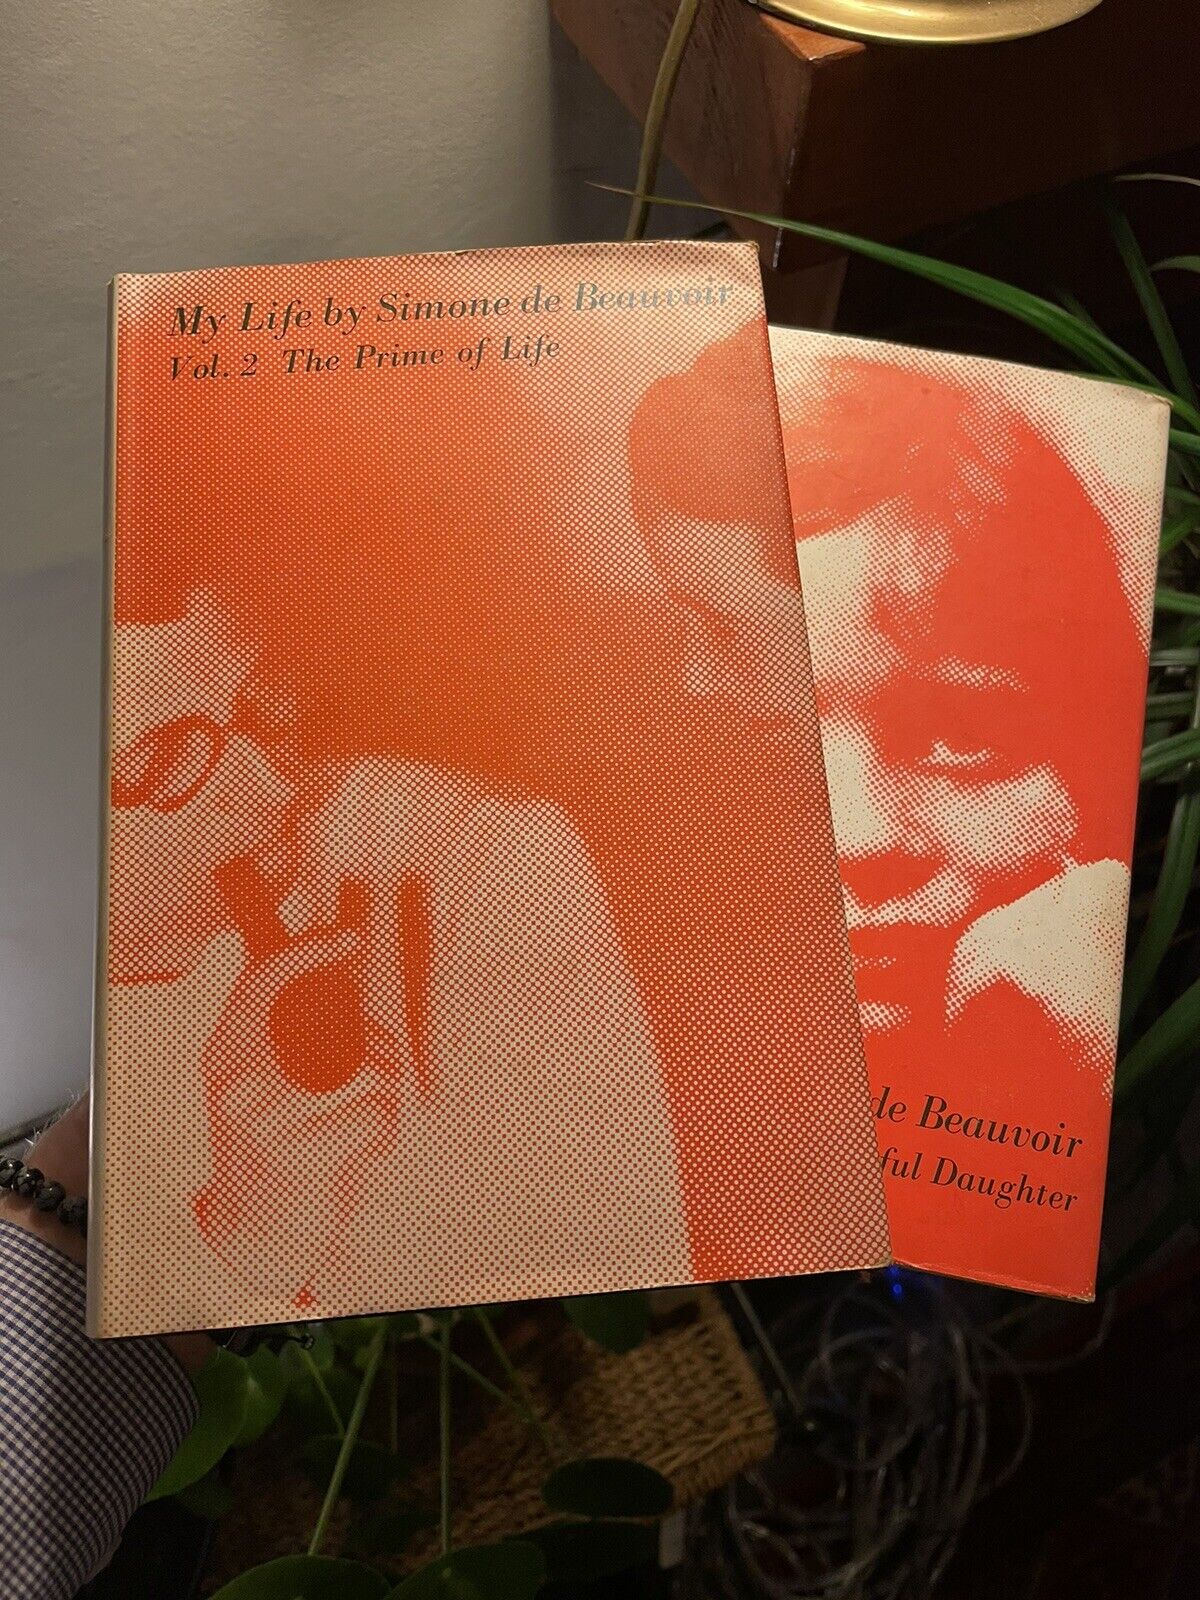 My Life by Simone de Beauvoir (2 Volumes) : Feminist Activist Autobiography 1963